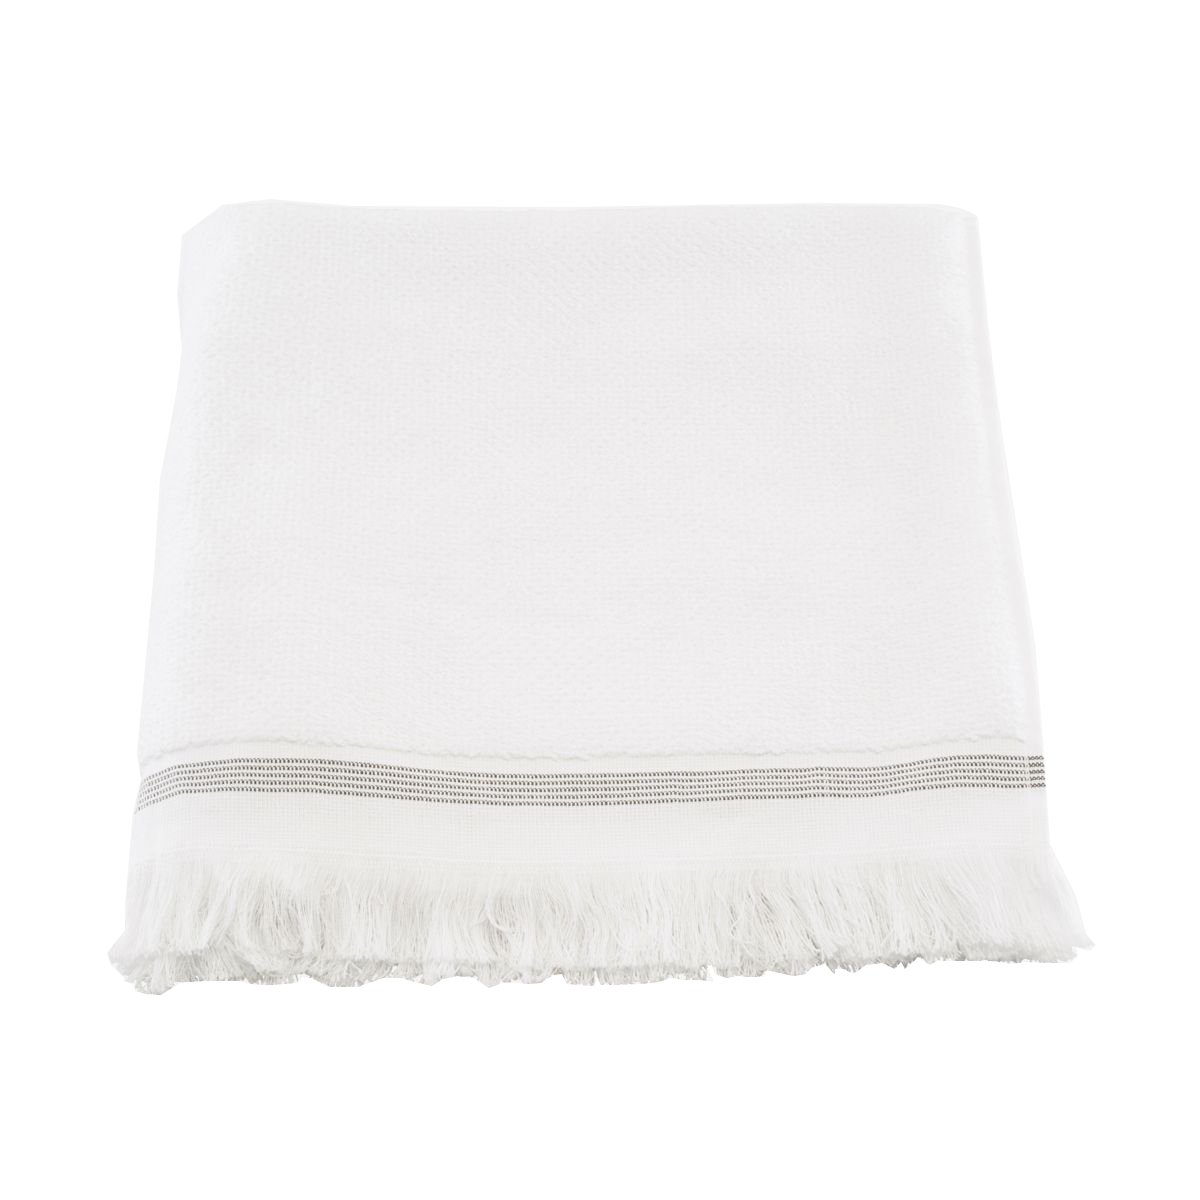 Meraki - Towel 70 x 140 cm - White/Grey Stripe (Mkds04/357780004)